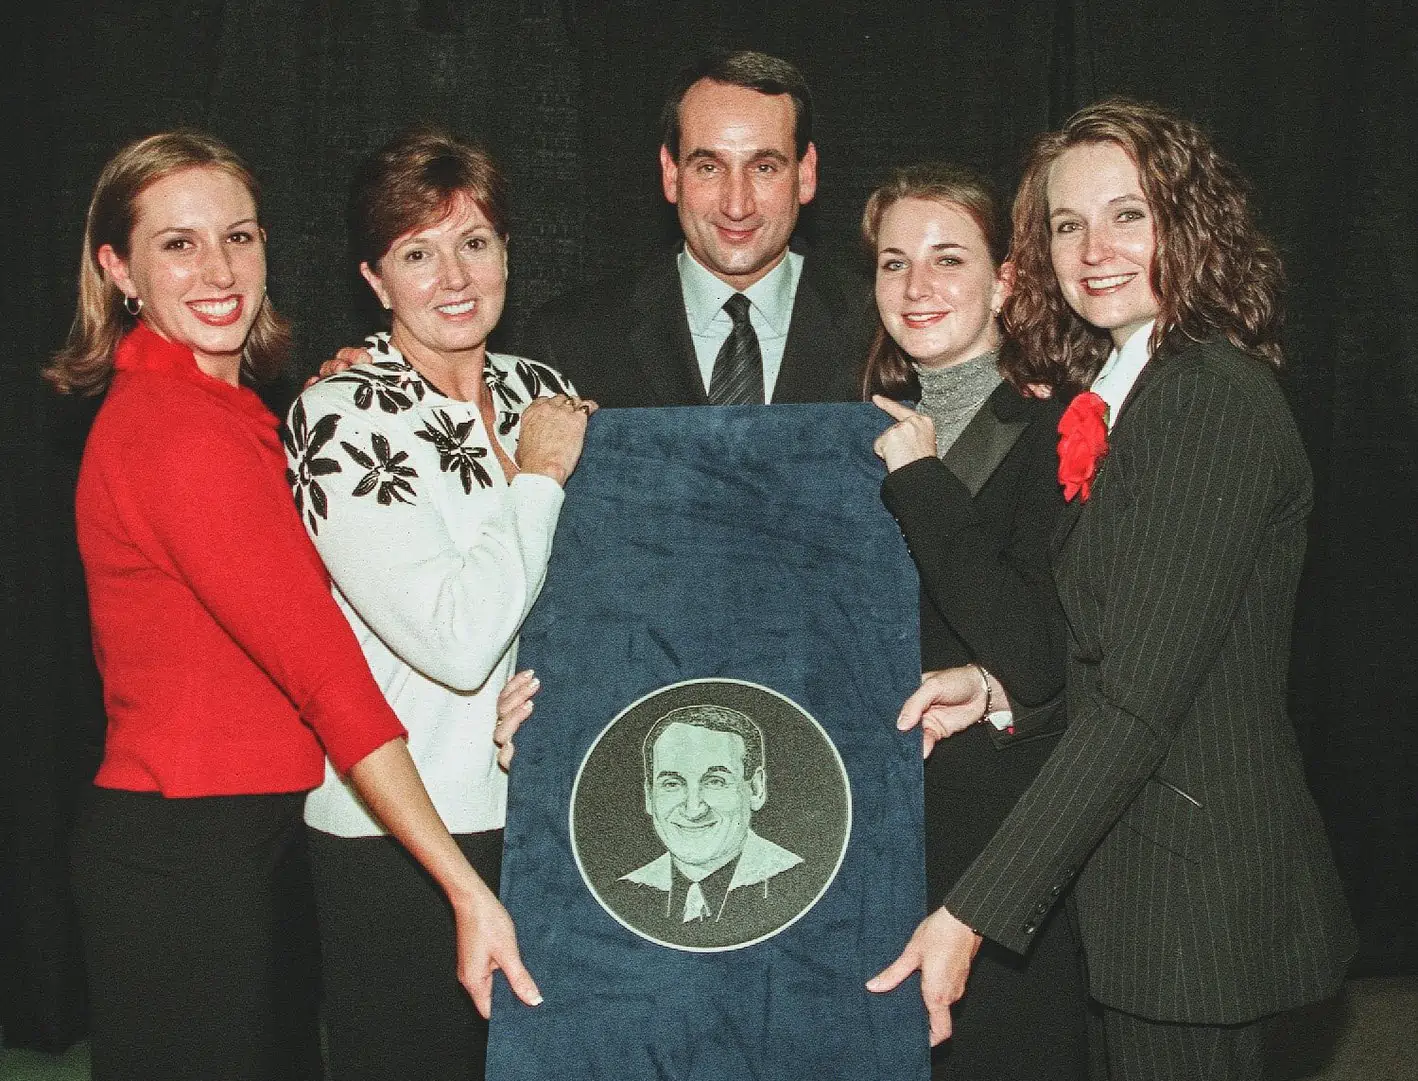 Mike Krzyzewski with his wife Mickie Krzyzewski and their three daughters